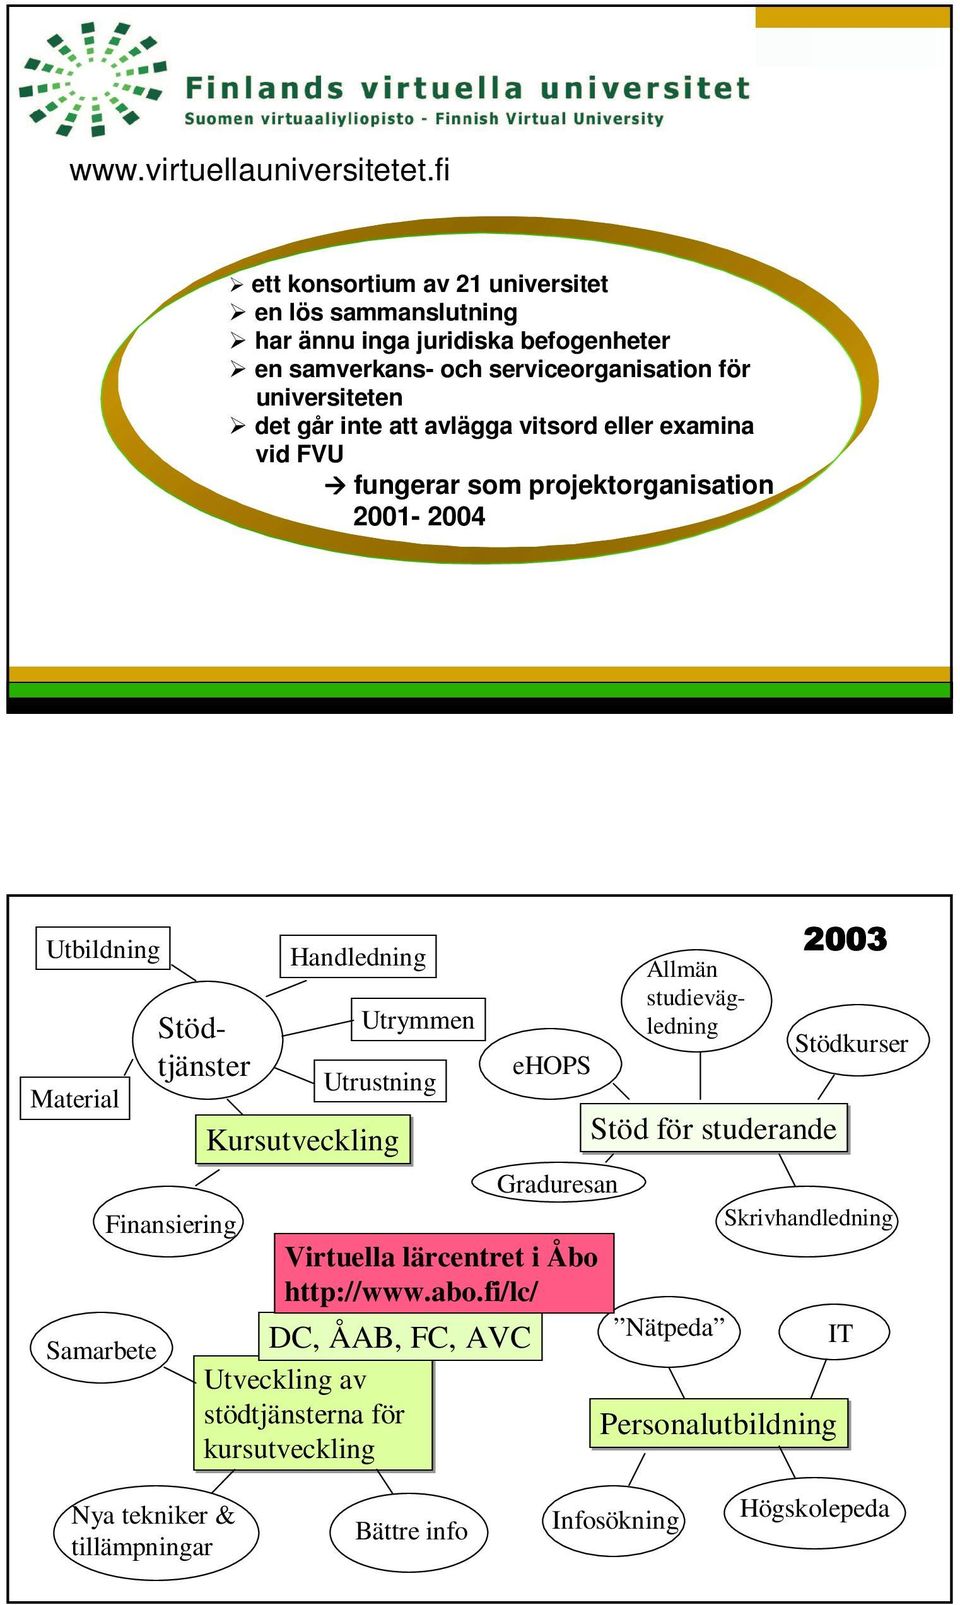 vitsord eller examina vid FVU fungerar som projektorganisation 2001-2004 Utbildning Material Samarbete Stödtjänster Finansiering Handledning Kursutveckling Utrymmen Utrustning